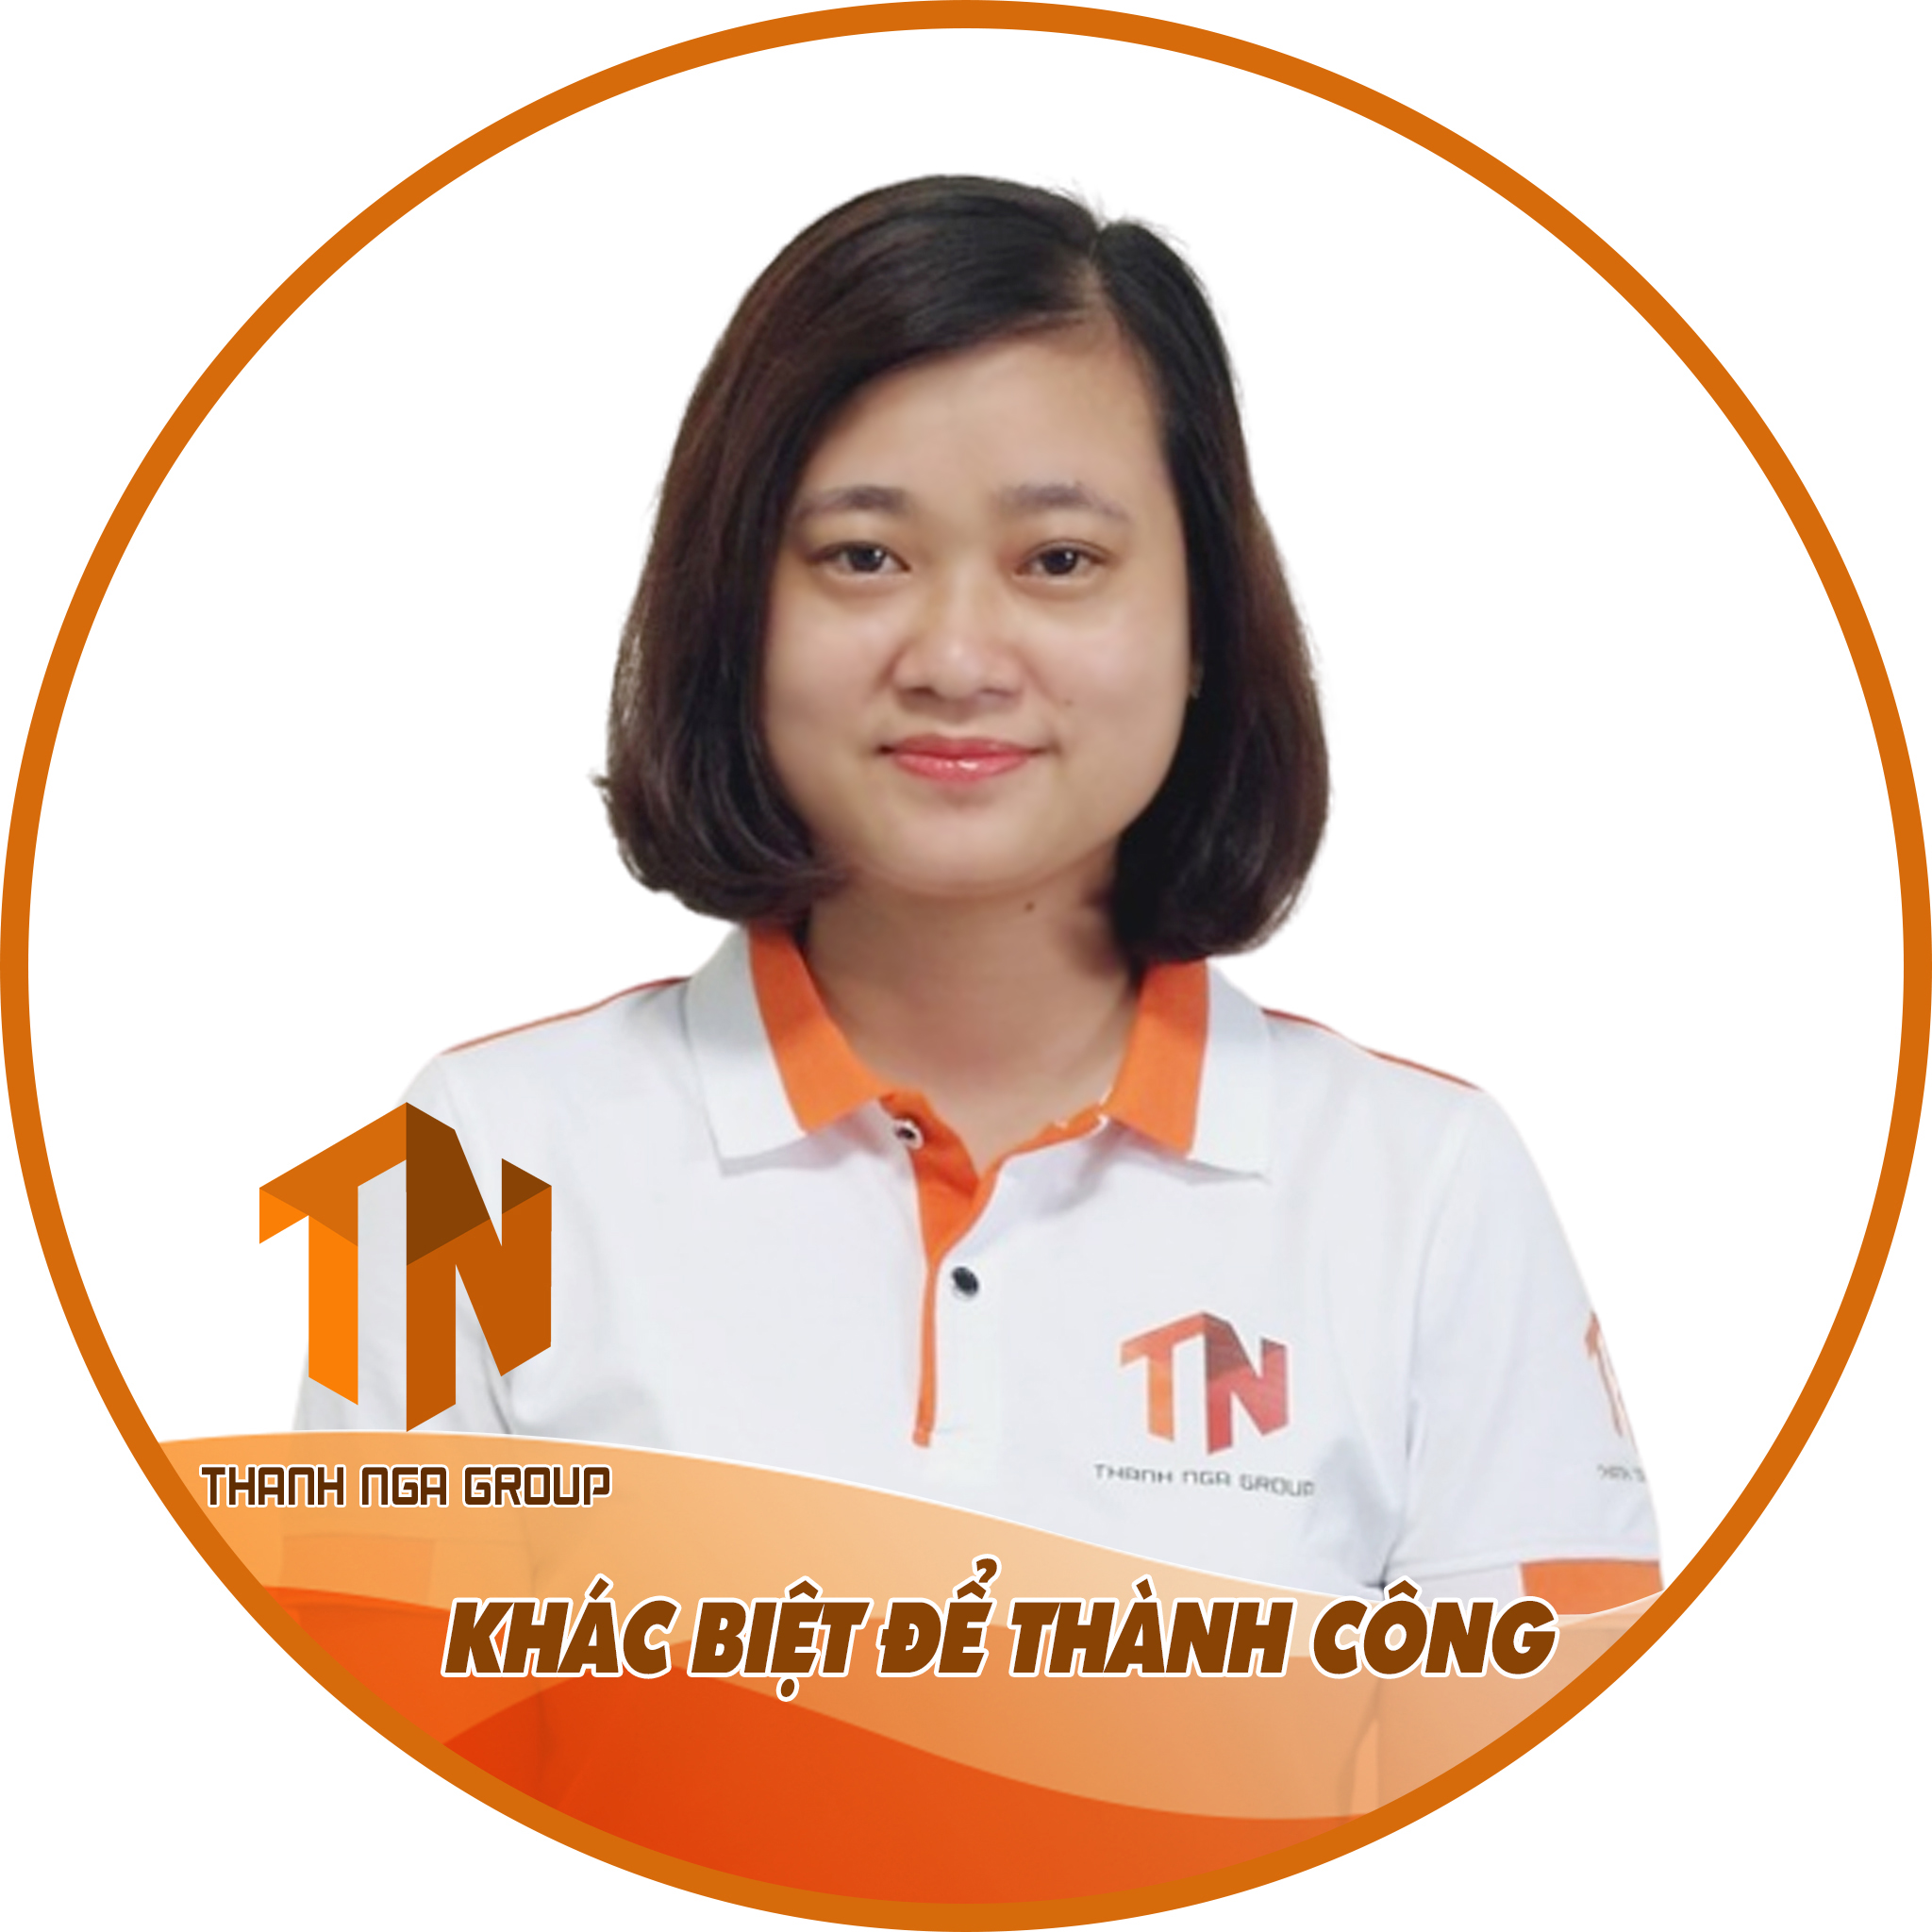 Ms Ngọc Giầu